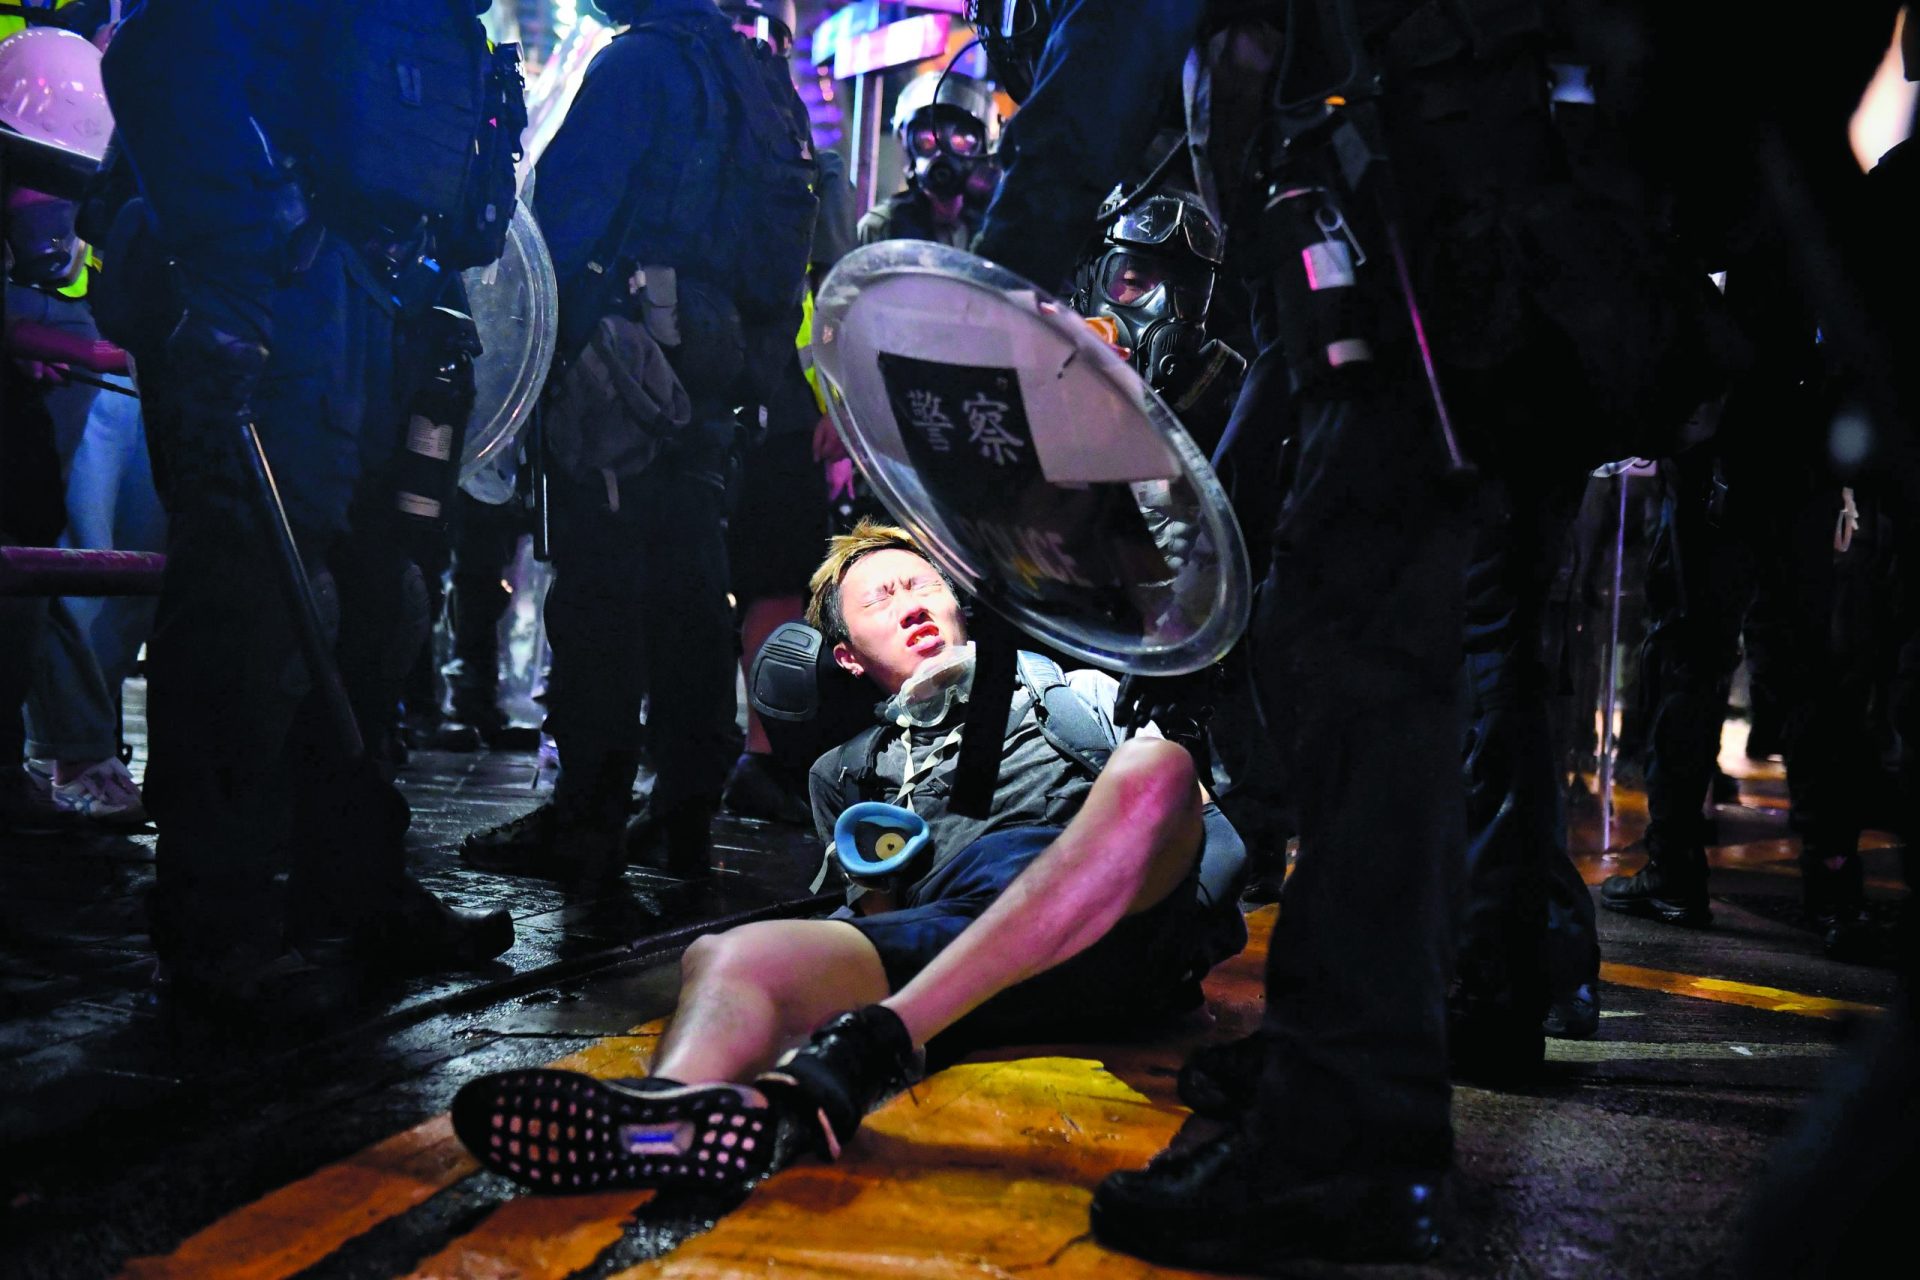 13ª semana de protestos marcada pela repressão policial em Hong Kong